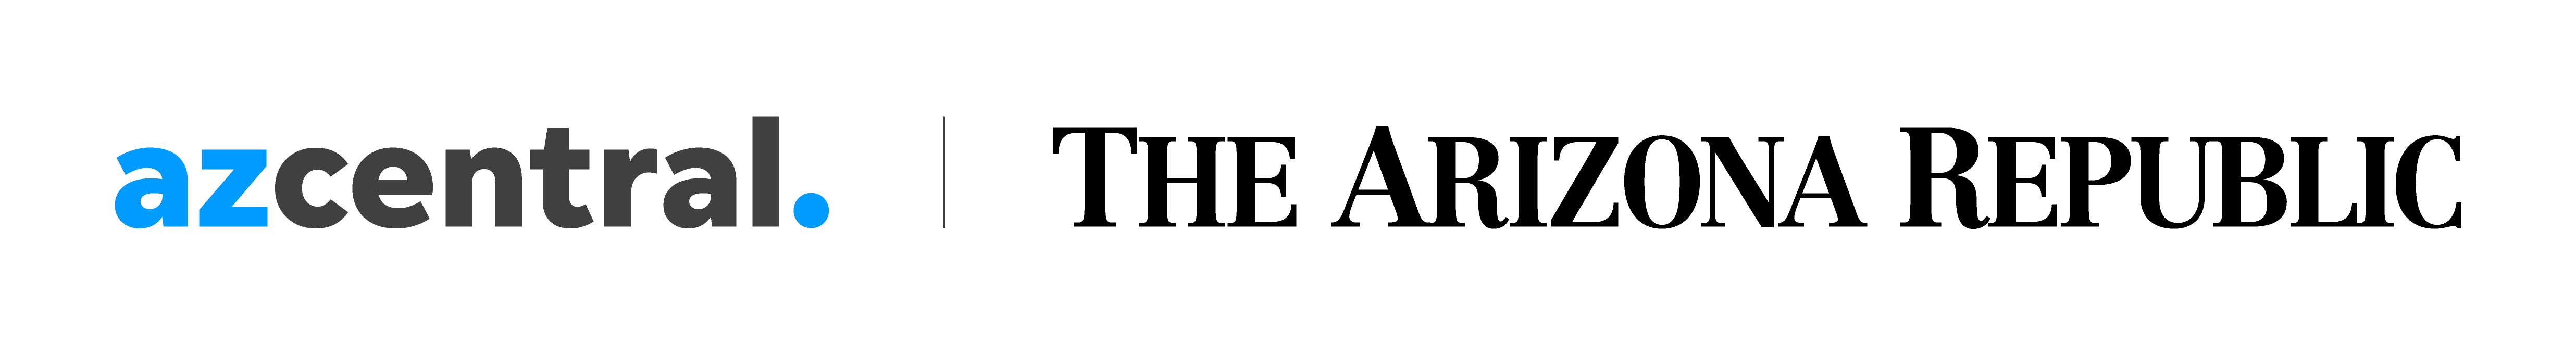 S20-The-Arizona-Republic-AZCentral-Logo